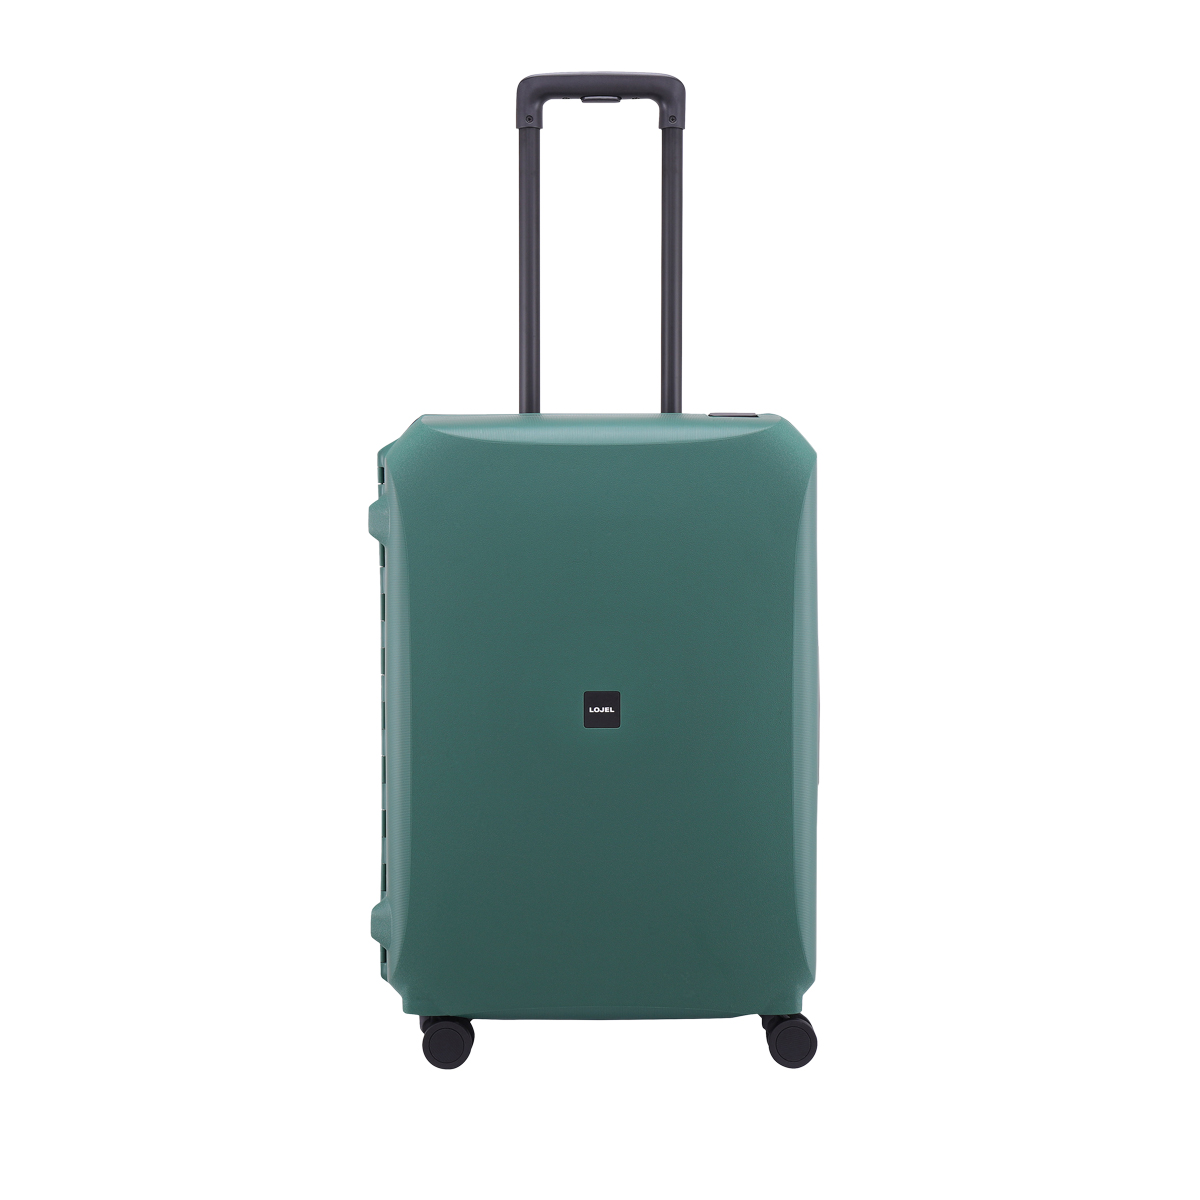 正規品 ロジェール スーツケース 66L 60cm Voja VOJA-M ハード LOJEL TSAロック搭載 キャリーバッグ キャリーケース